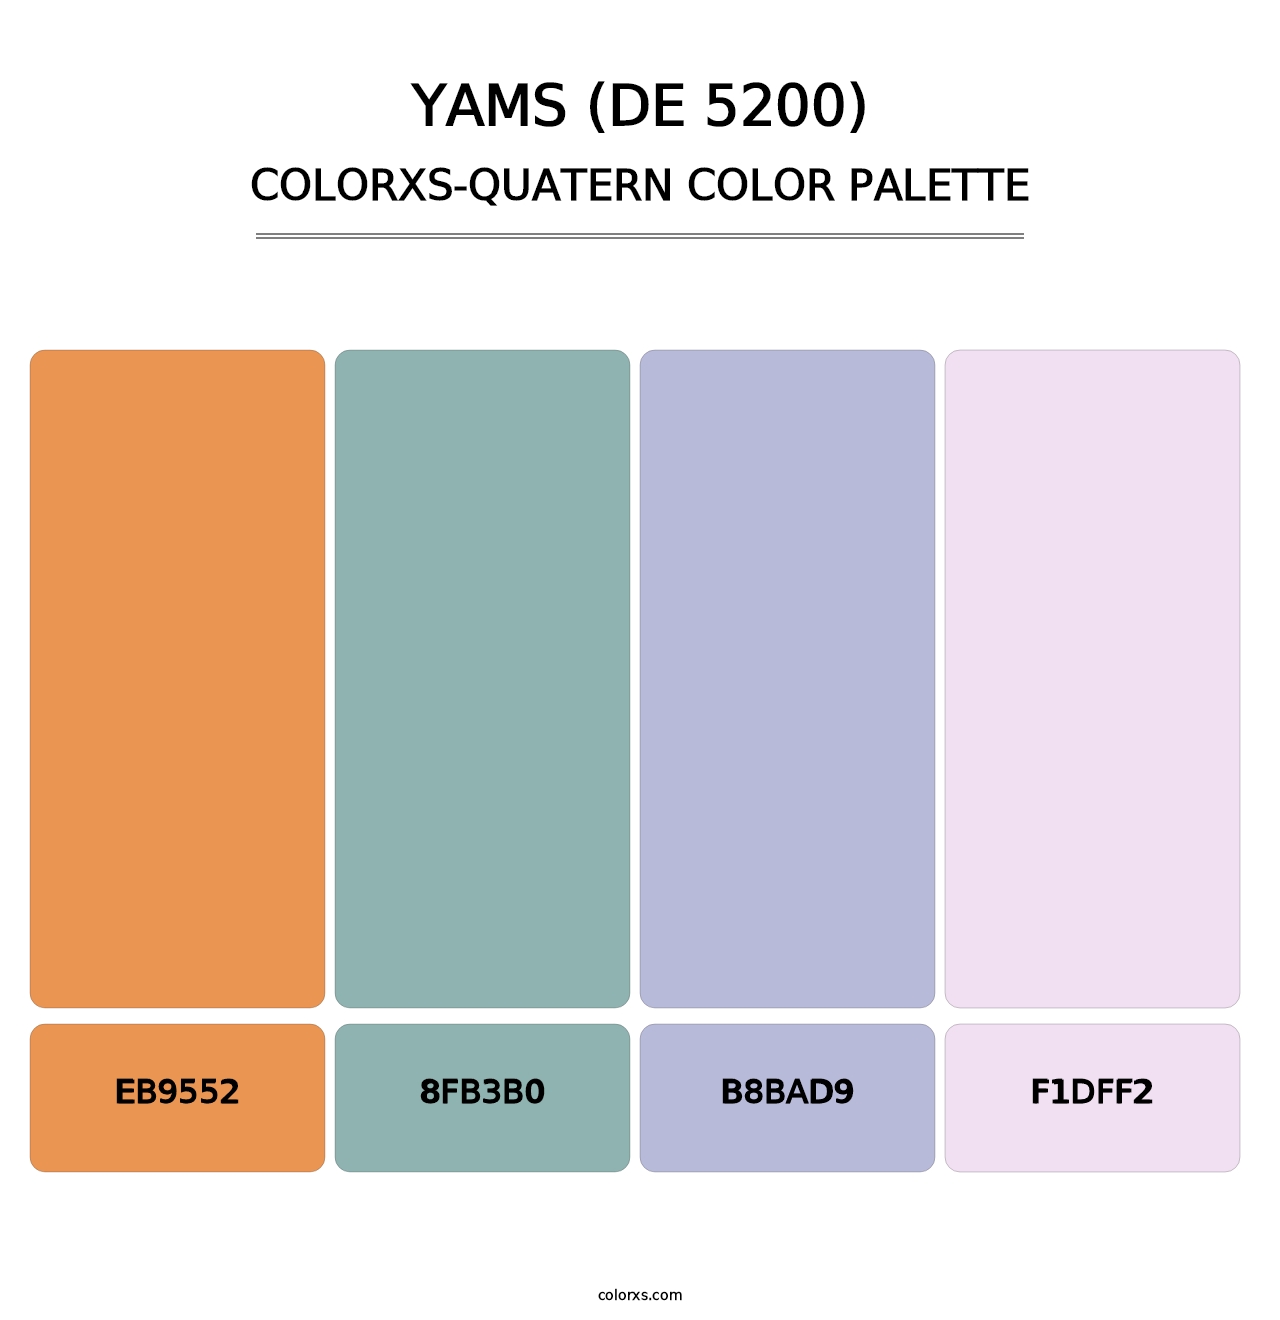 Yams (DE 5200) - Colorxs Quatern Palette